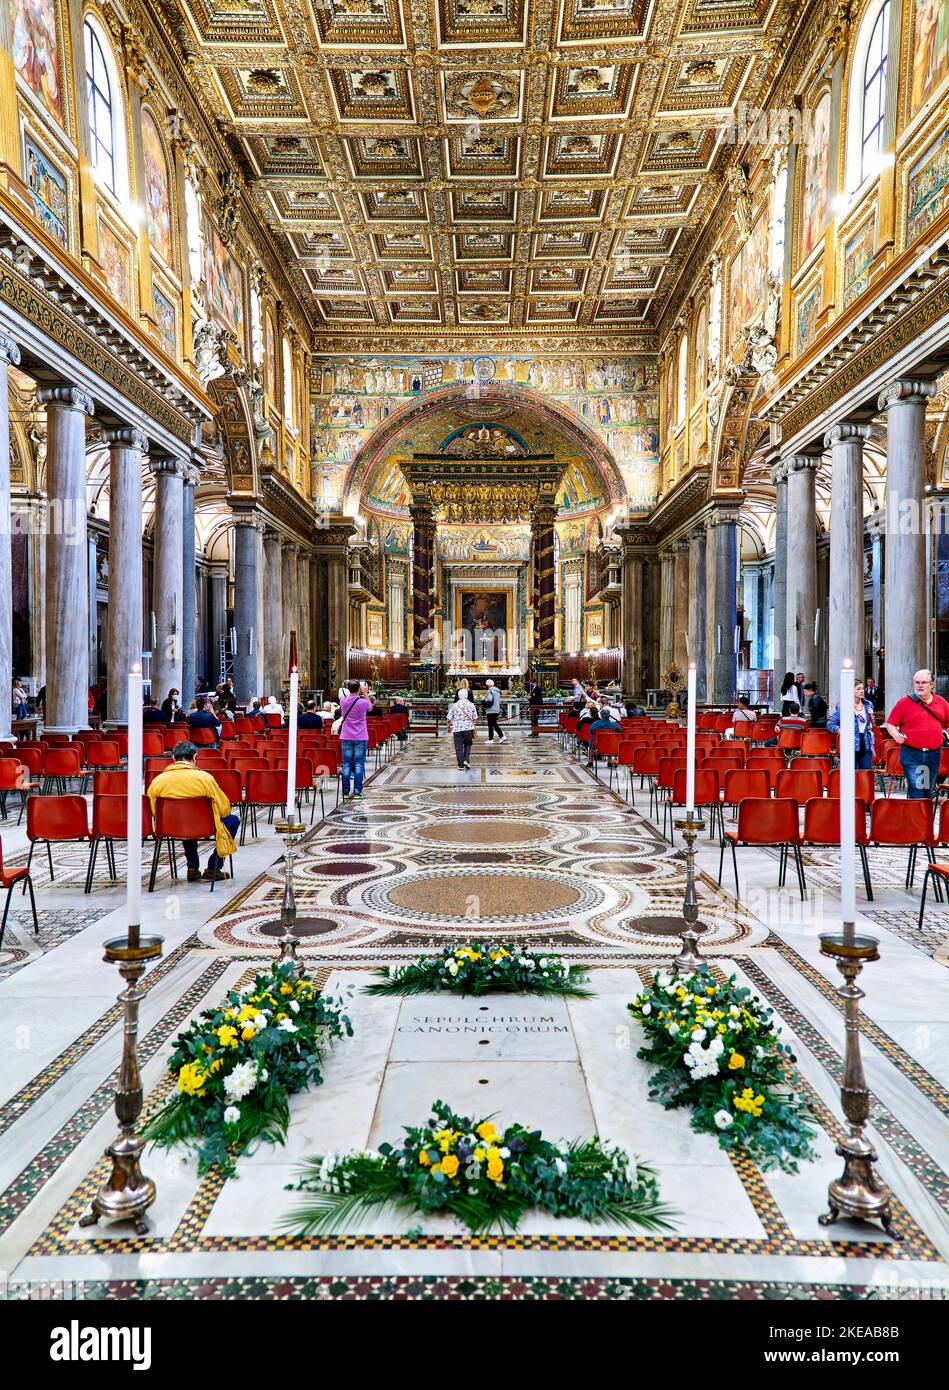 Rome Lazio Italy. The Basilica of Saint Mary Major (Basilica Papale di Santa Maria Maggiore) Stock Photo